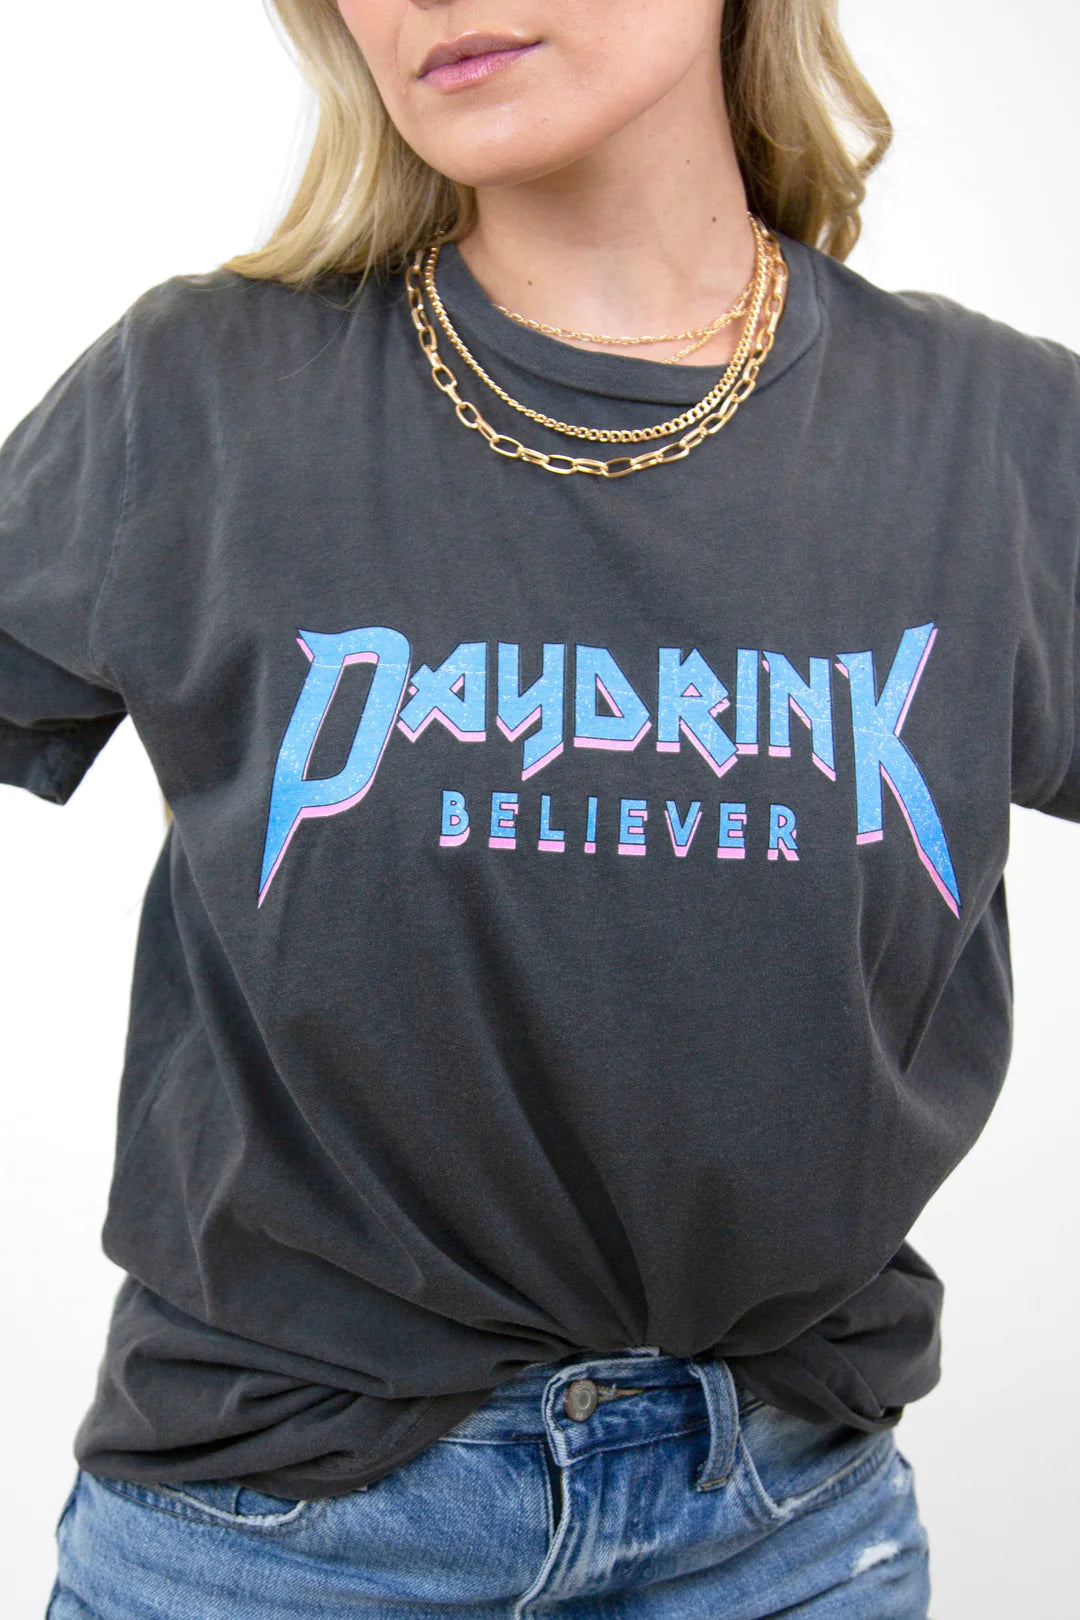 Daydrink Believer™ Metal Garment Dye Tee